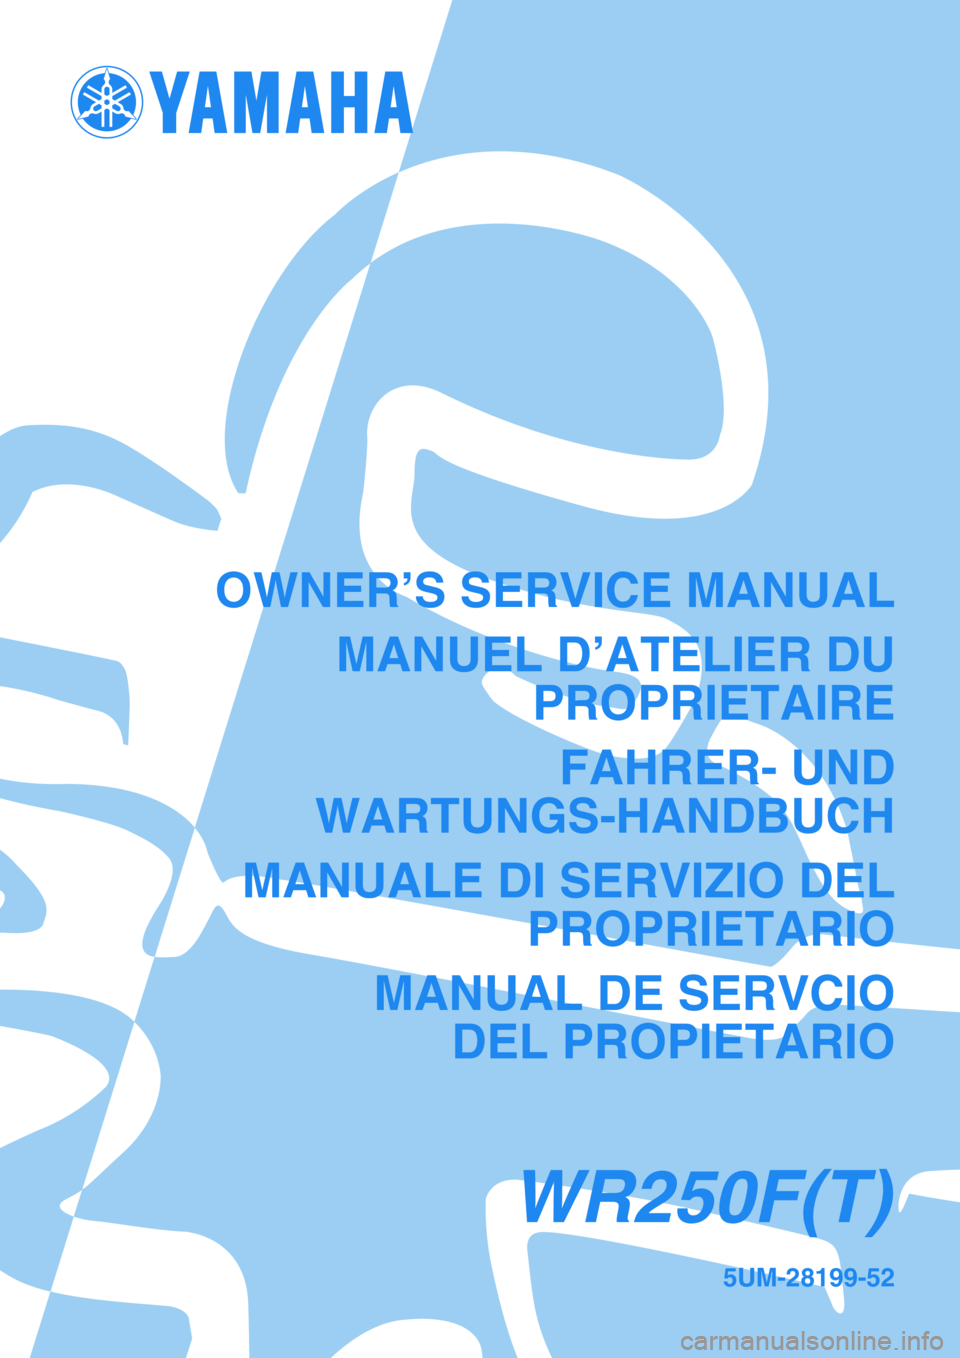 YAMAHA WR 250F 2005  Notices Demploi (in French) 5UM-28199-52
WR250F(T)
OWNER’S SERVICE MANUAL
MANUEL D’ATELIER DU
PROPRIETAIRE
FAHRER- UND
WARTUNGS-HANDBUCH
MANUALE DI SERVIZIO DEL
PROPRIETARIO
MANUAL DE SERVCIO
DEL PROPIETARIO 